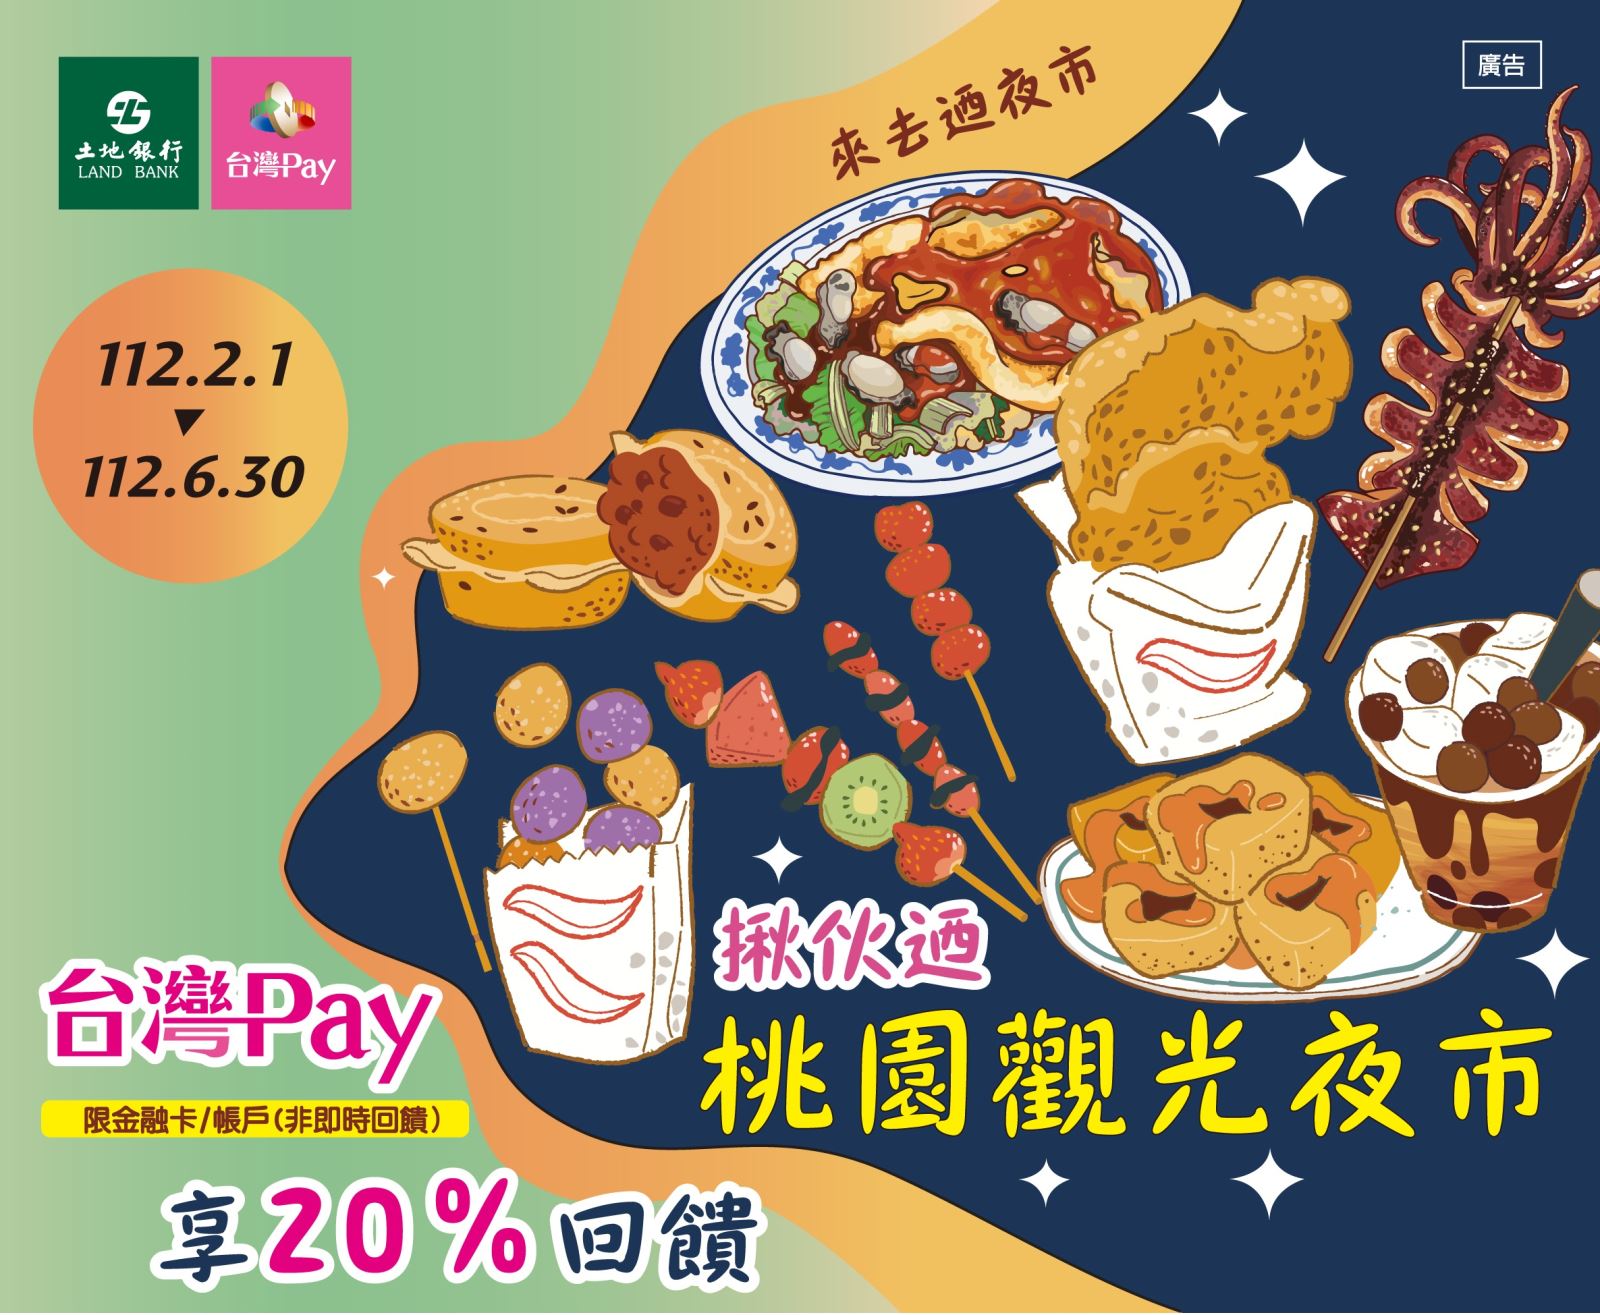 用戶於活動期間至活動地點消費，並使用「台灣 Pay」掃碼支付成功者，單筆消費不限金額可享20%之現金回饋